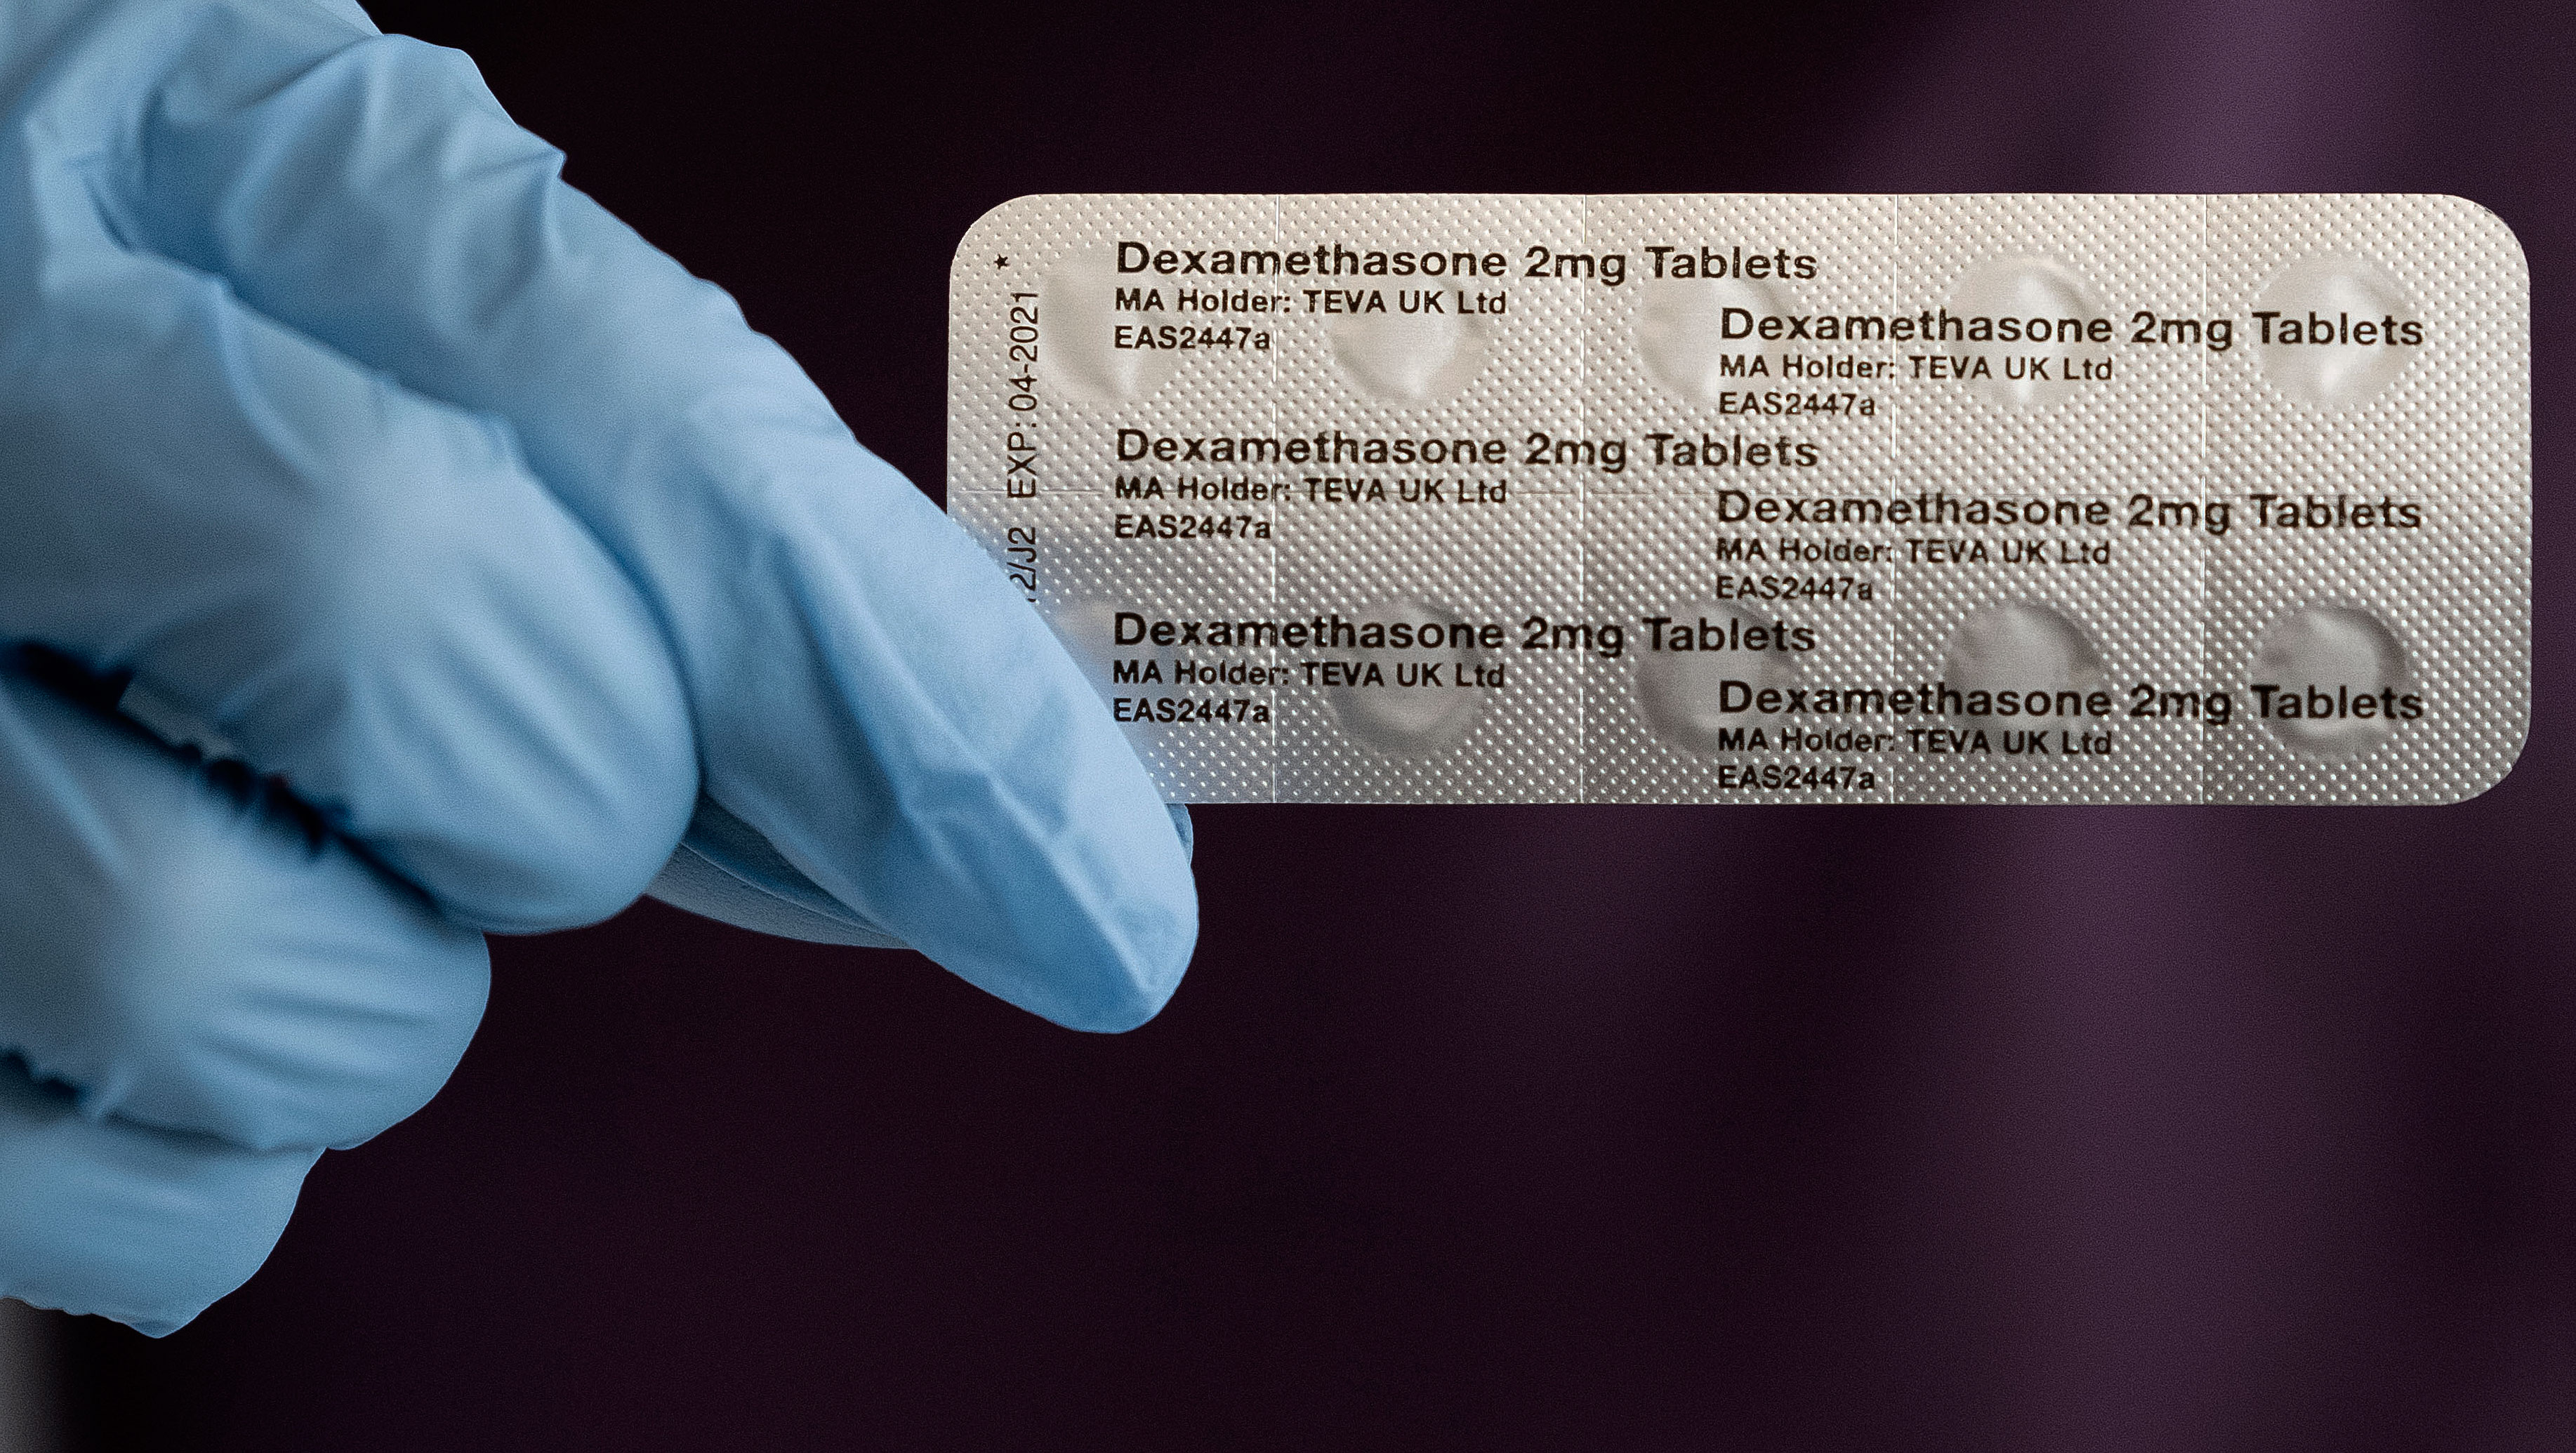 Dexamethasone will be used to treat Covid-19